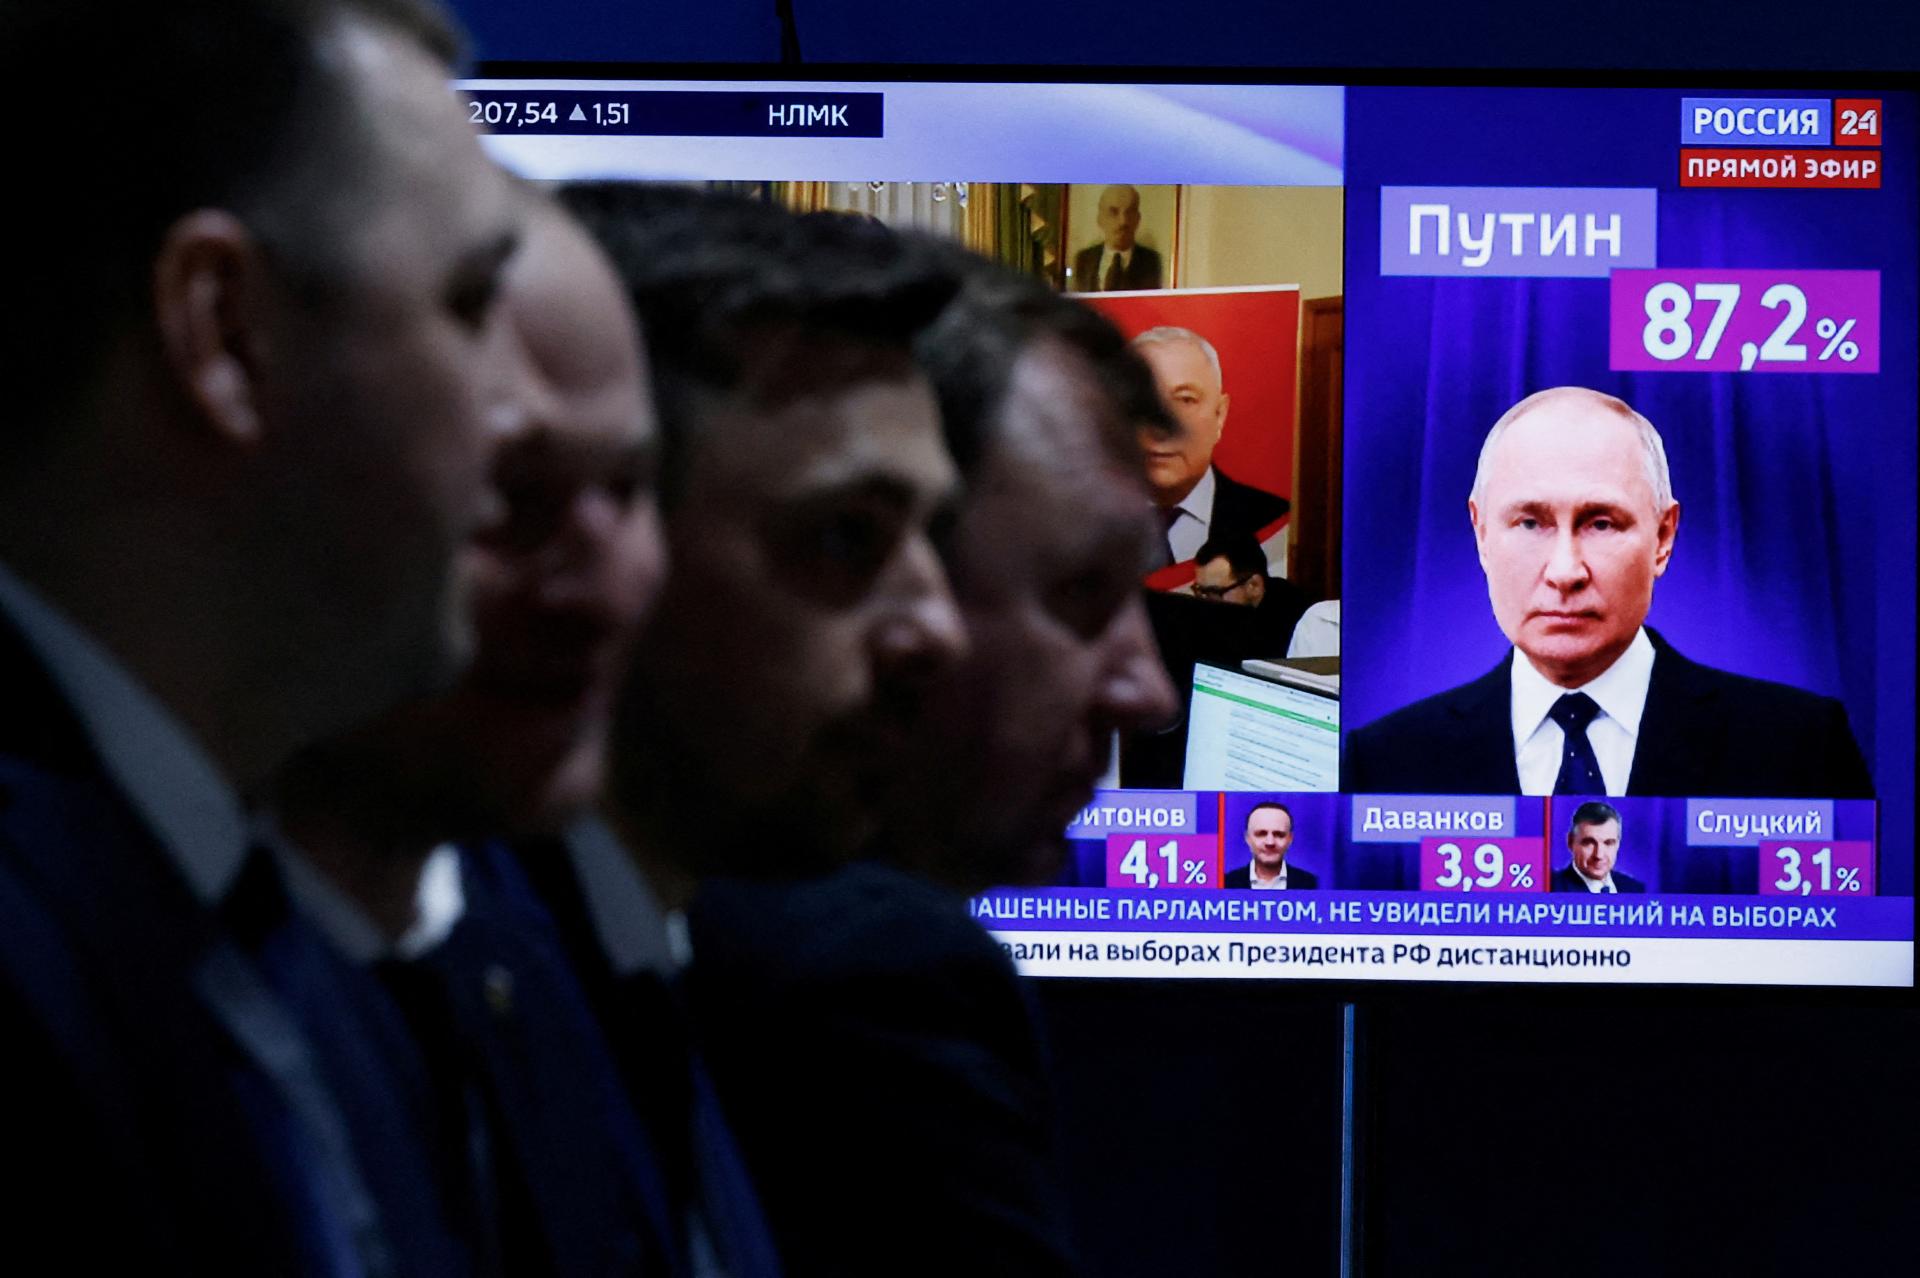 Podvrhli polovicu hlasov? Kremeľ žiadal ráznu výhru, z Putina je ázijský diktátor